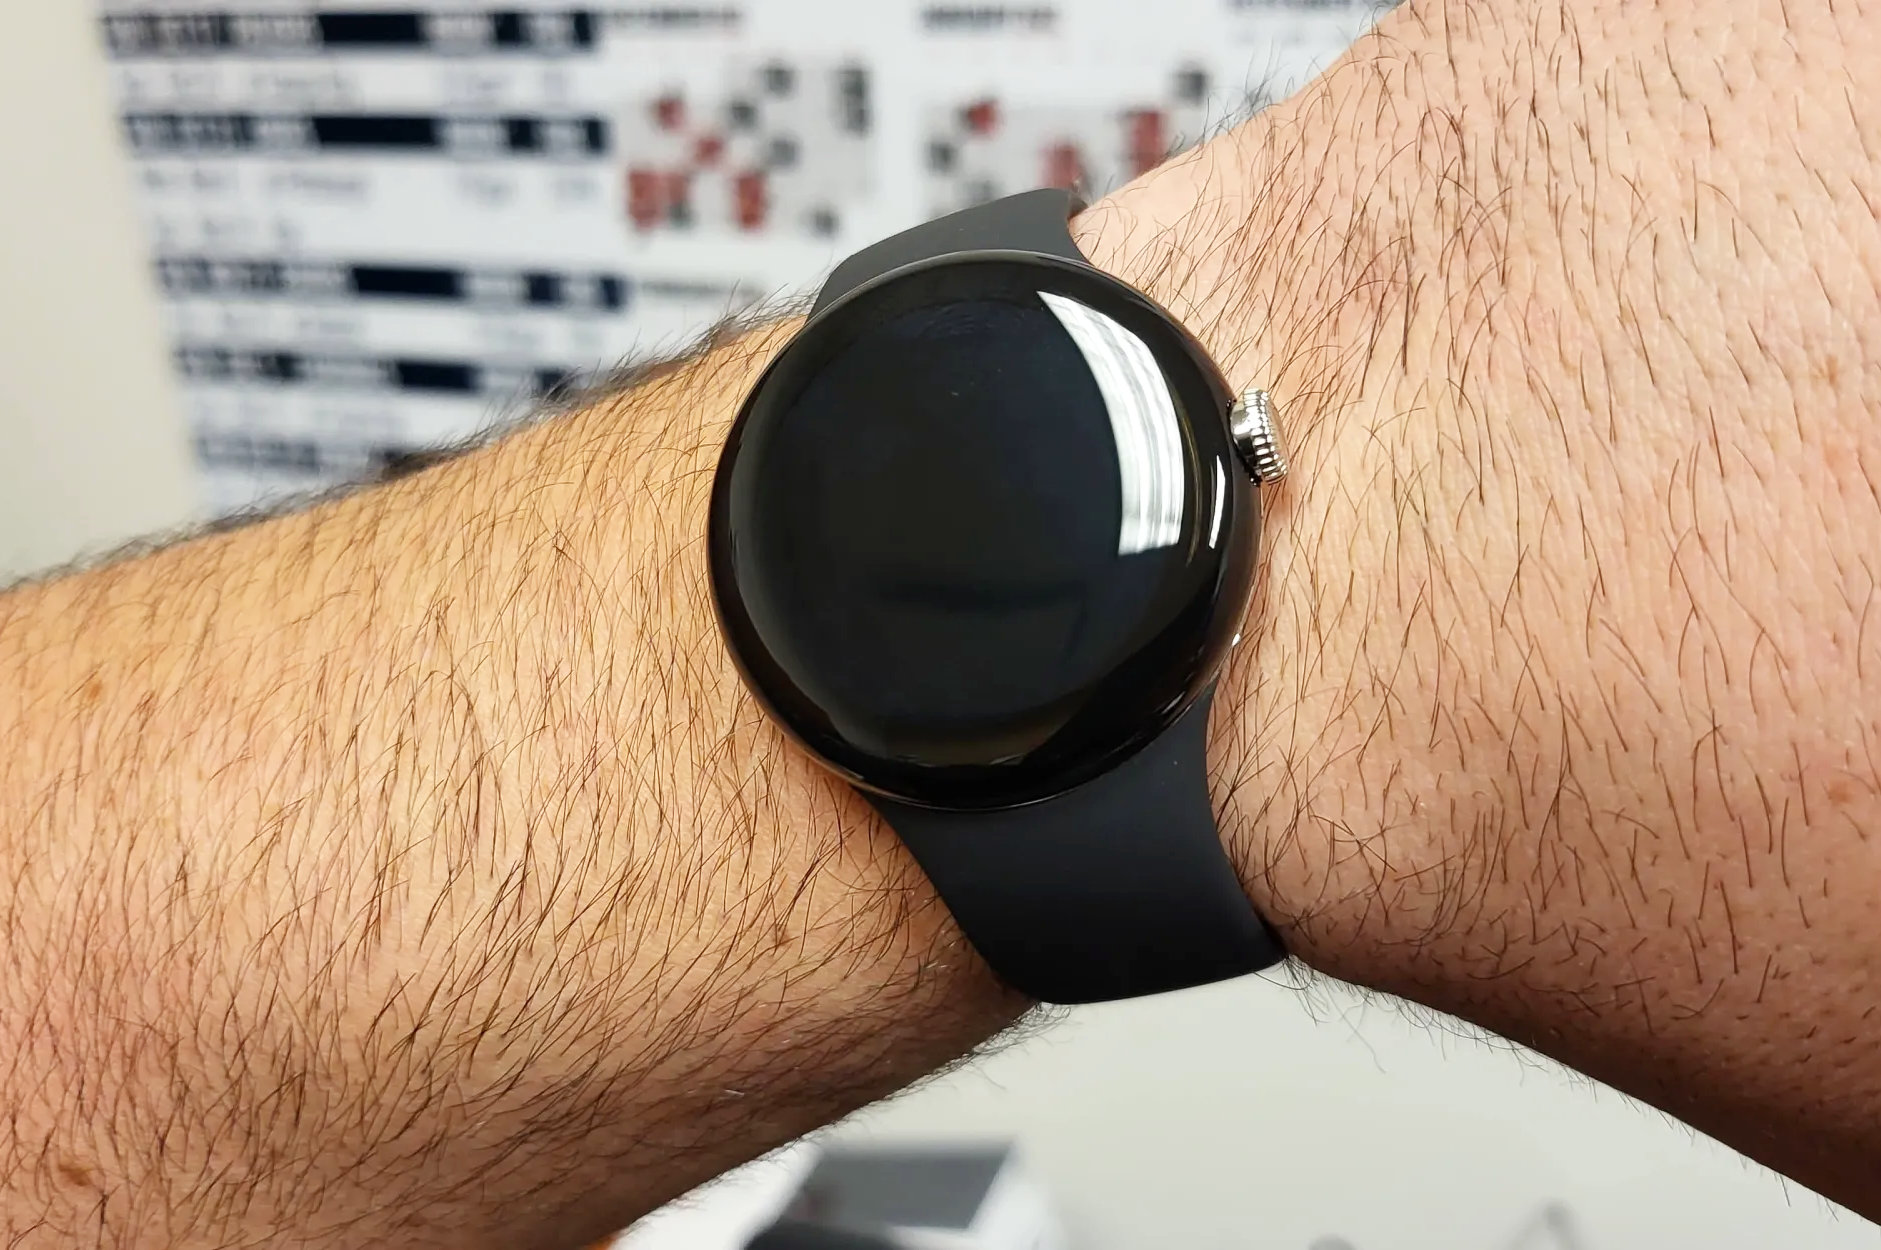 Google anuncia su nuevo reloj, el Pixel Watch